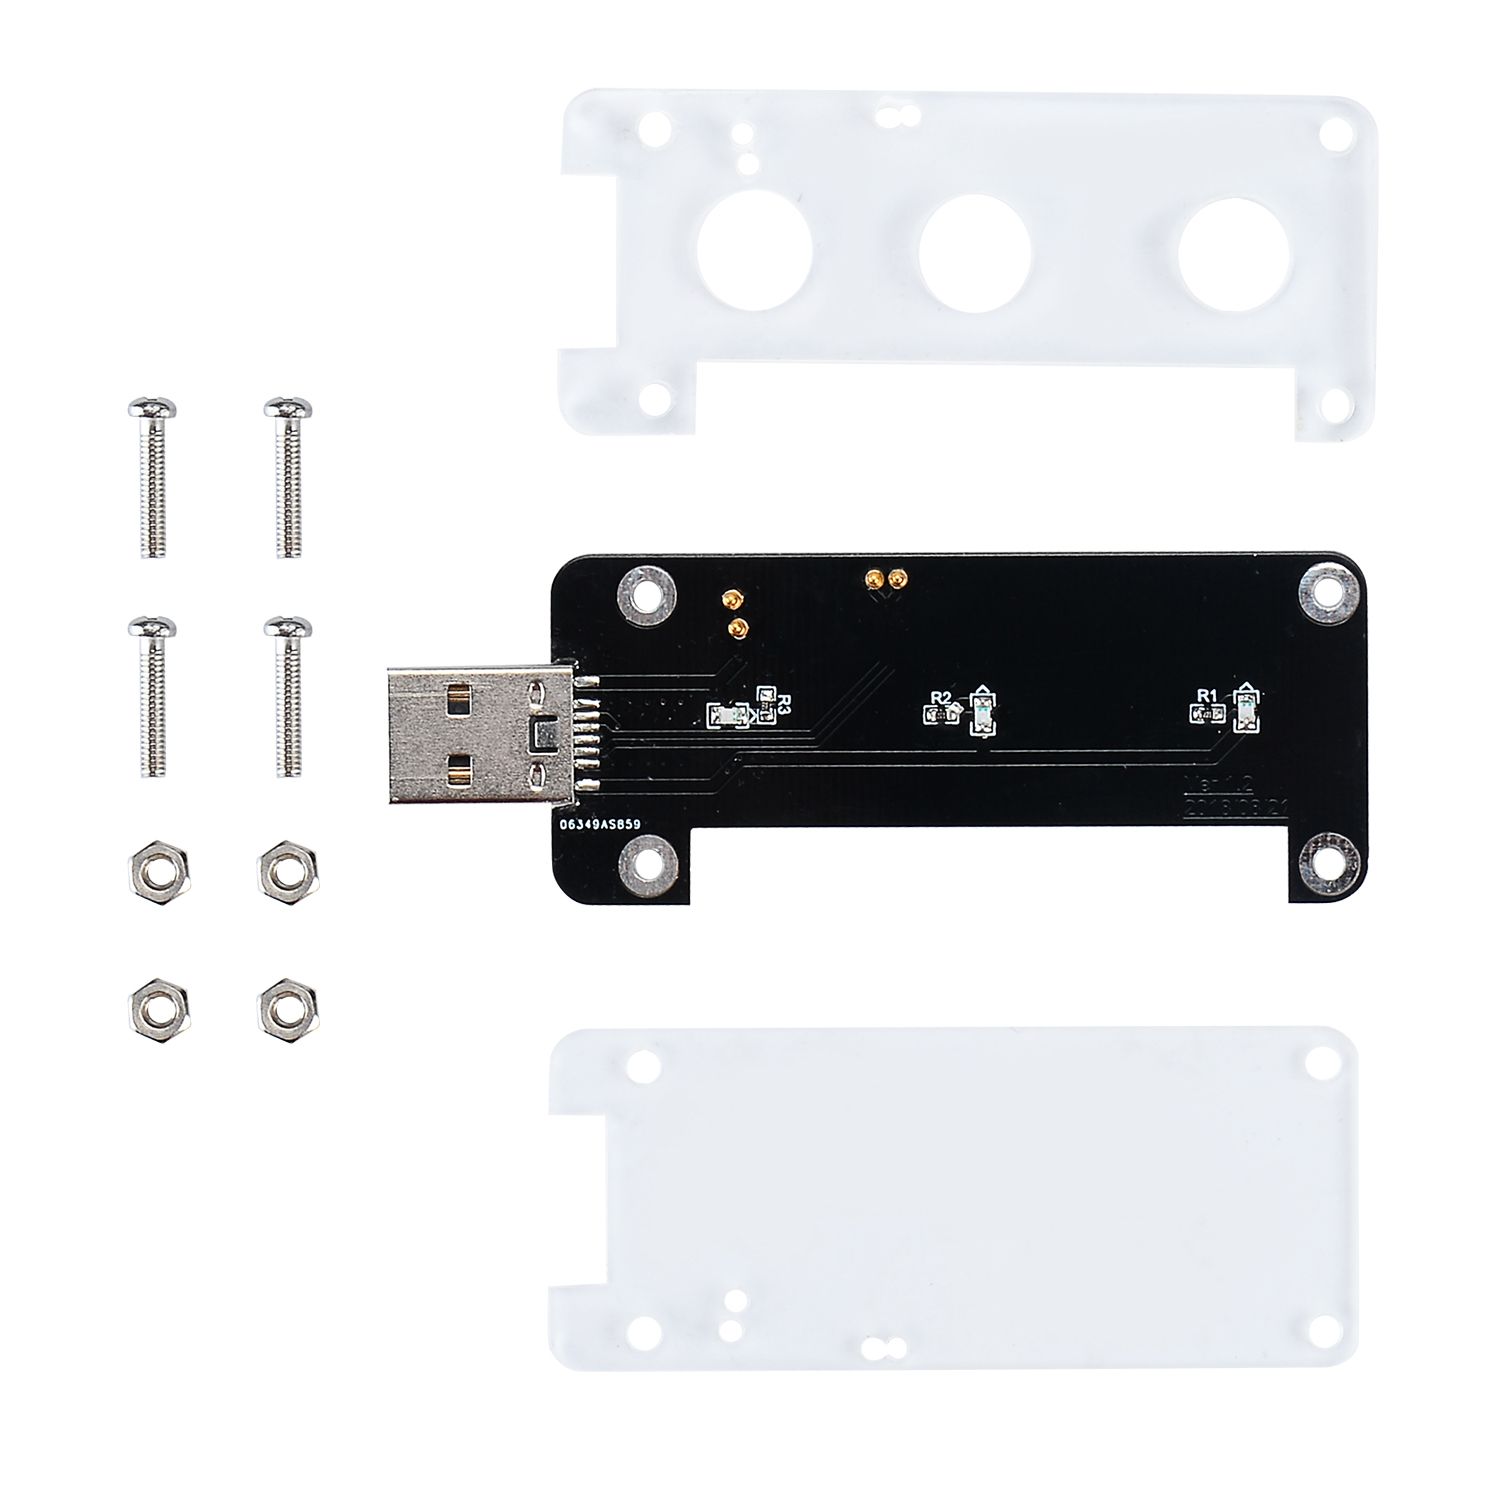 USB-Dongle-With-Acrylic-Shield-for-Raspberry-Pi-Zero--Zero-W-1432397